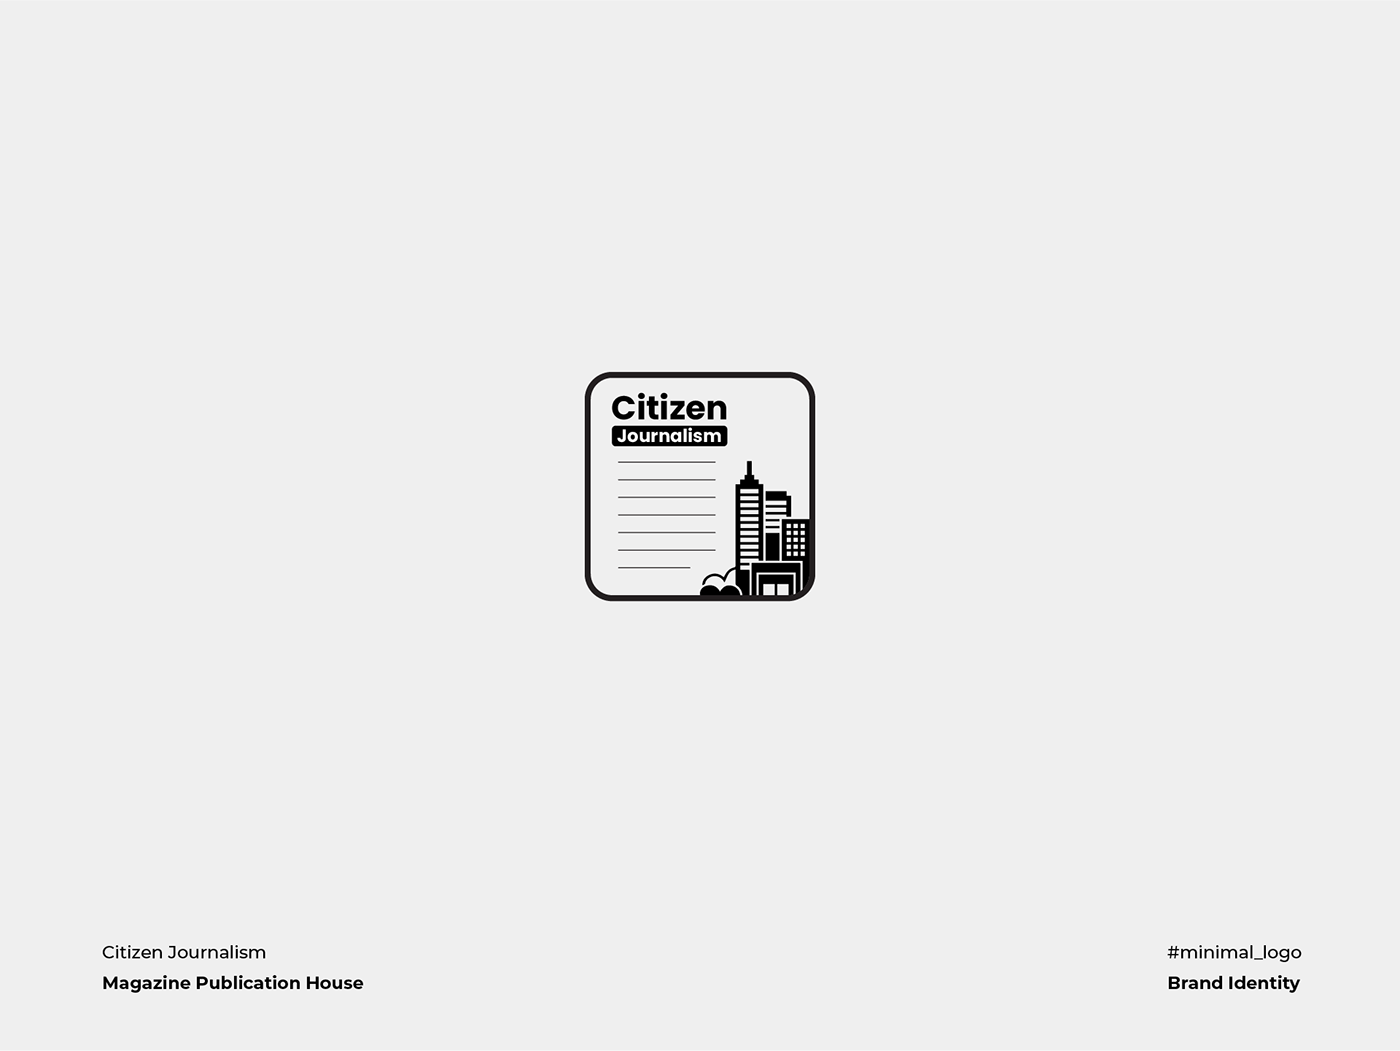 Citizen Journalism is a magazine publication house.